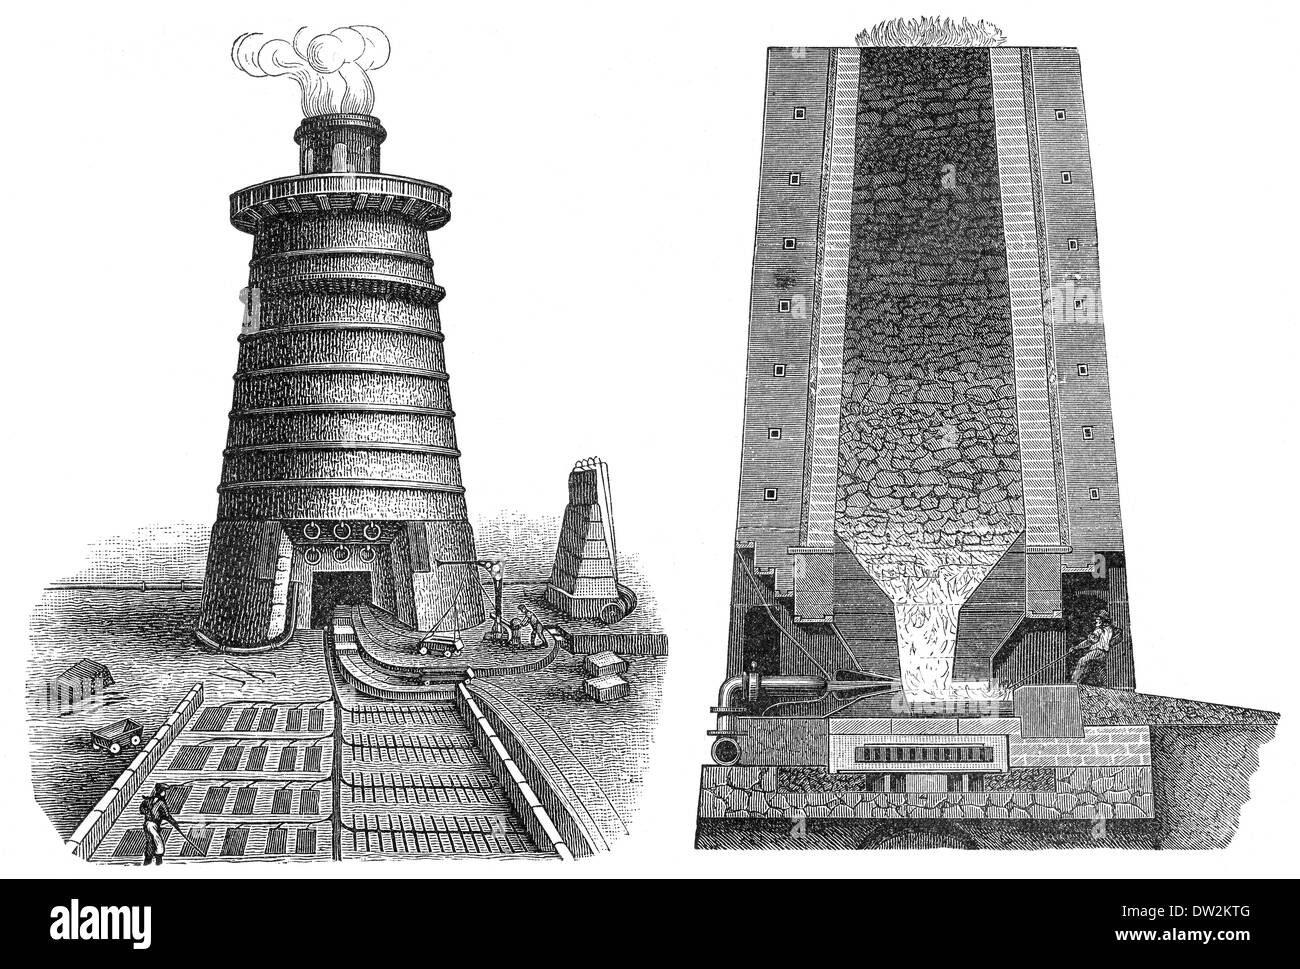 Technical processing of iron in different blast furnaces, 1894, technische Eisenverarbeitung in verschiedenen Hochöfen, 1894 Stock Photo